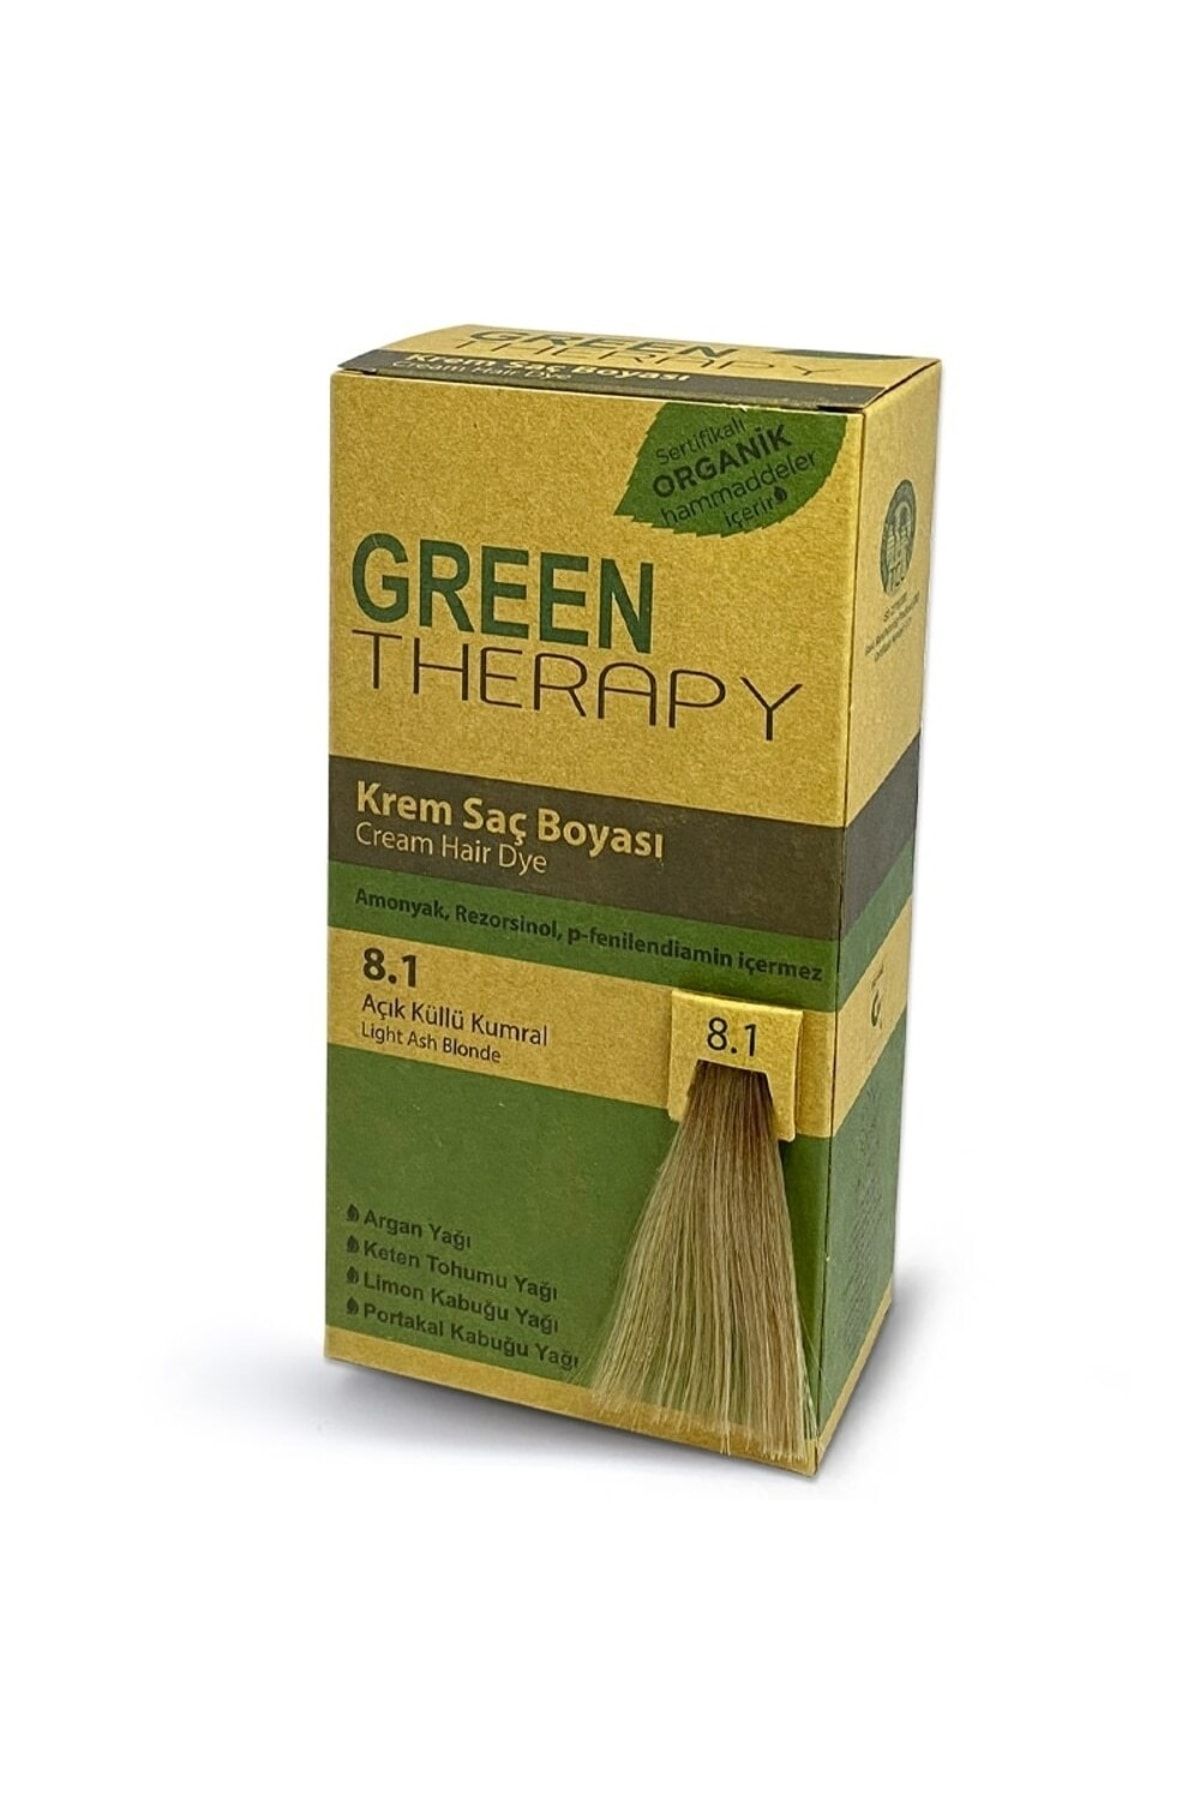 Green Therapy Krem Saç Boyası 6,7 Çikolata Kahve